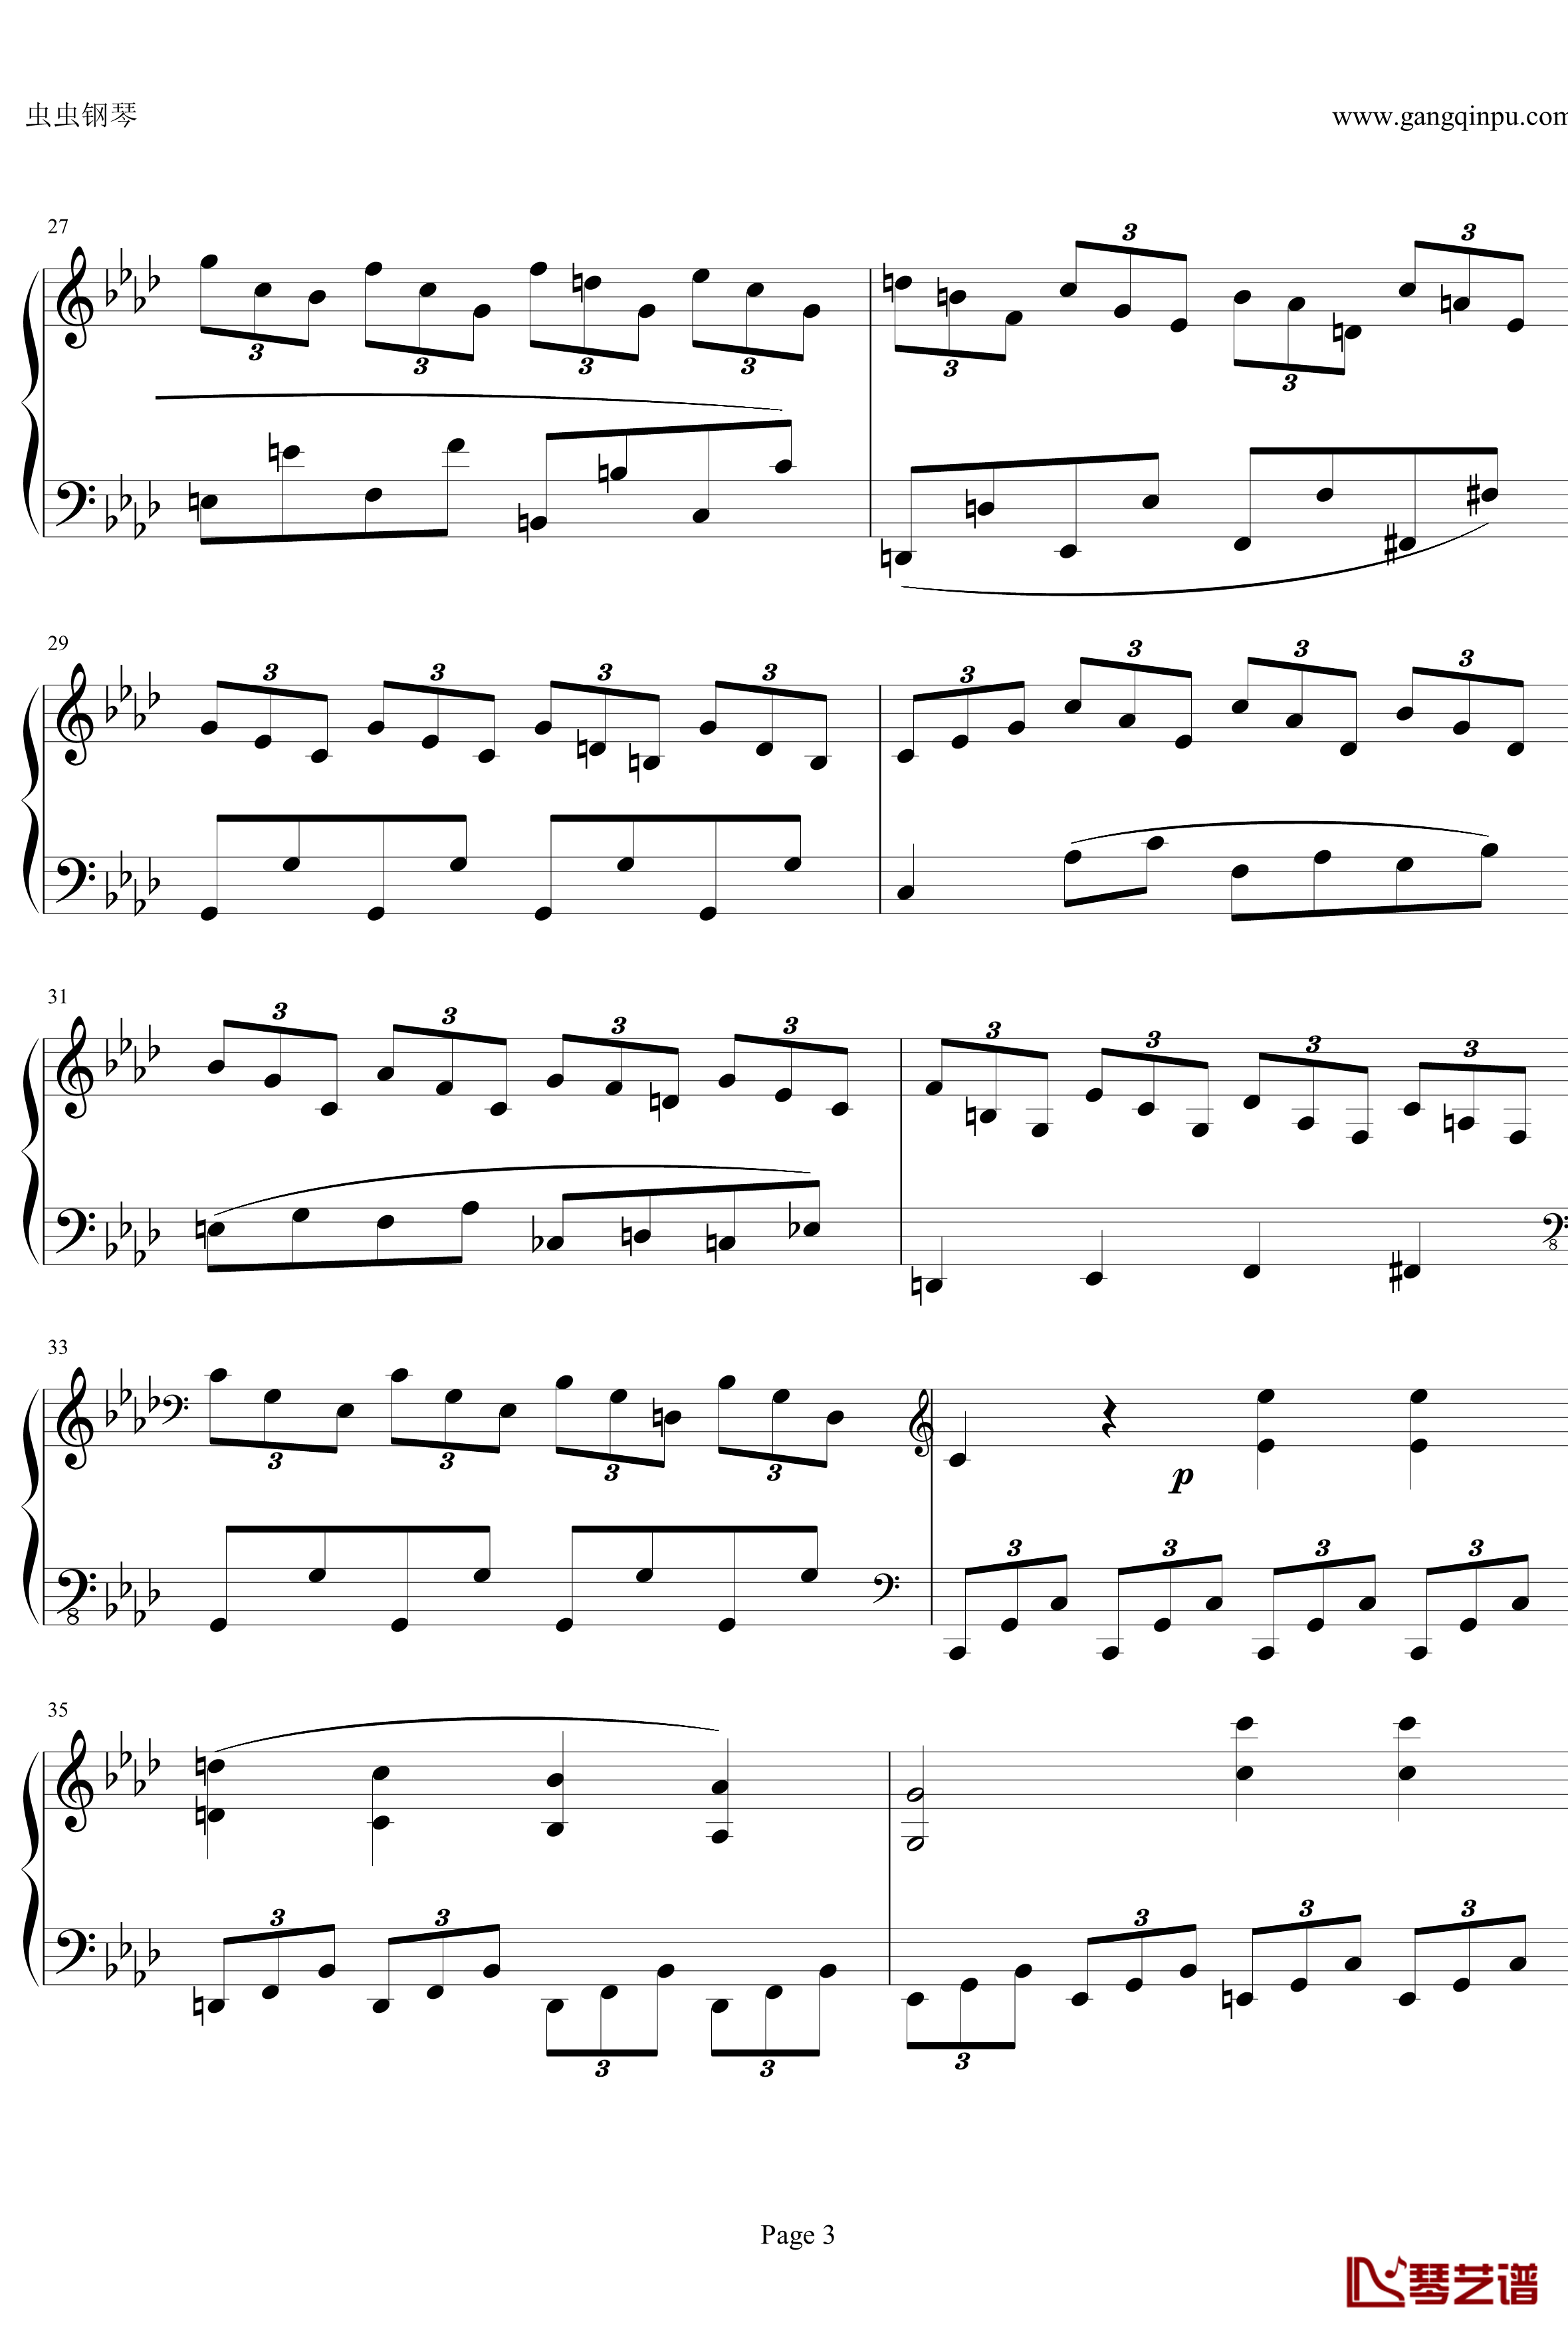 贝多芬第一钢琴奏鸣曲钢琴谱-作品2，第一号-贝多芬-beethoven3